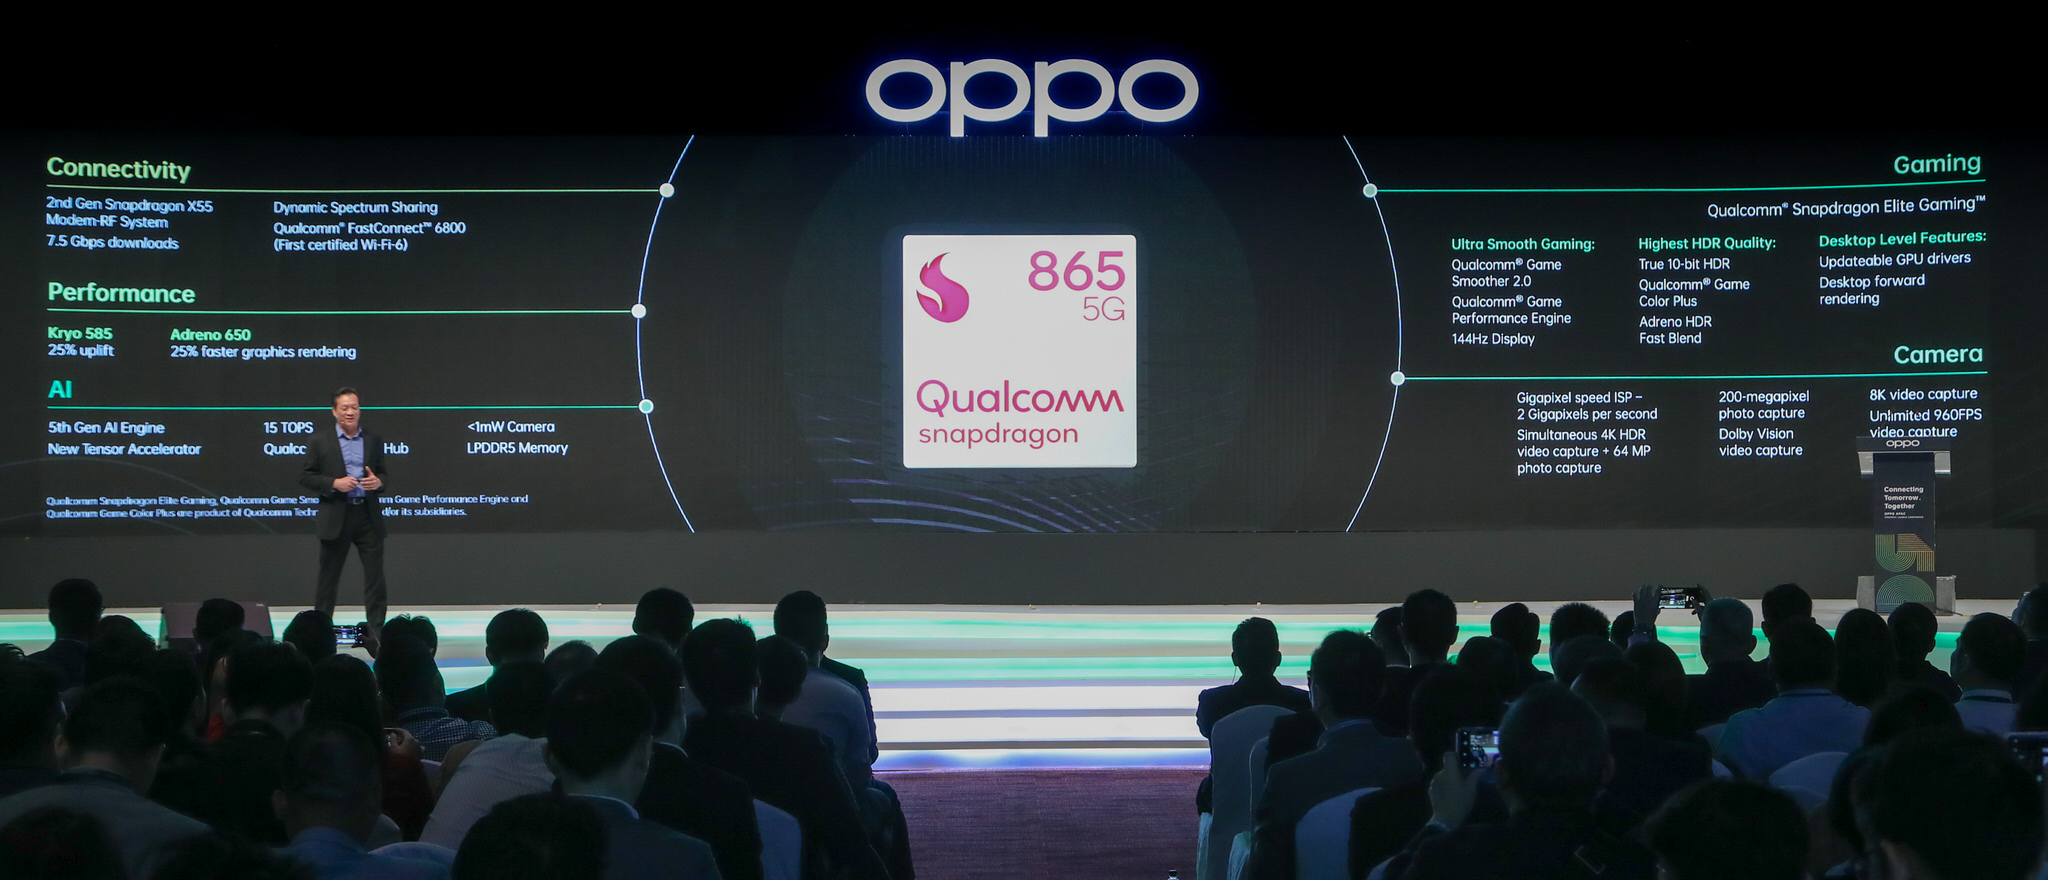 Vivo là một trong những hãng smartphone đầu tiên trang bị bộ vi xử lý Qualcomm Snapdragon 865 tích hợp 5G